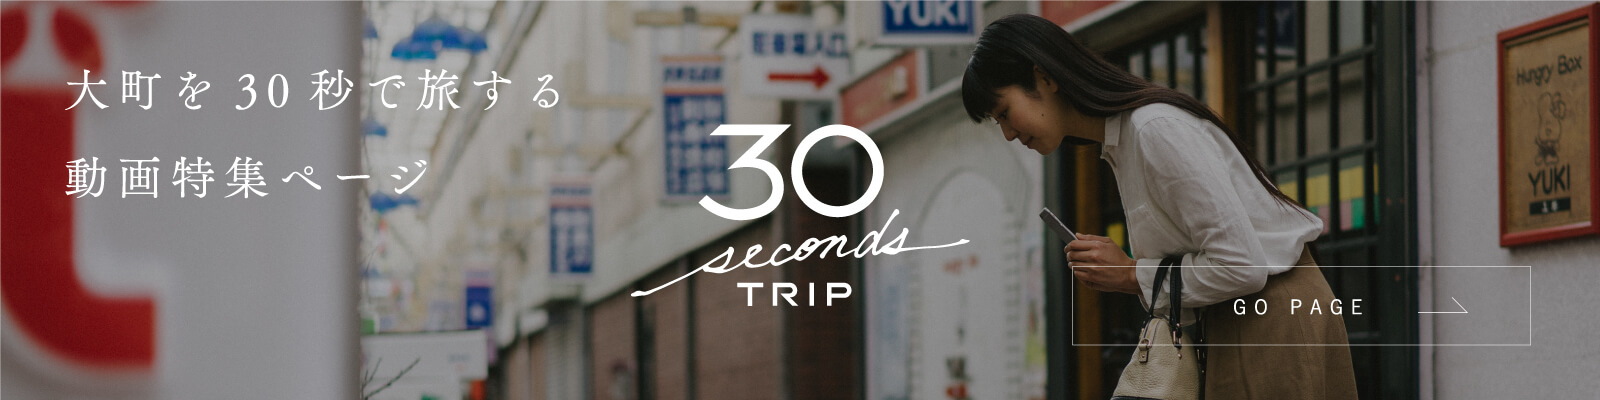 大町を30秒で旅する 動画特集ページ